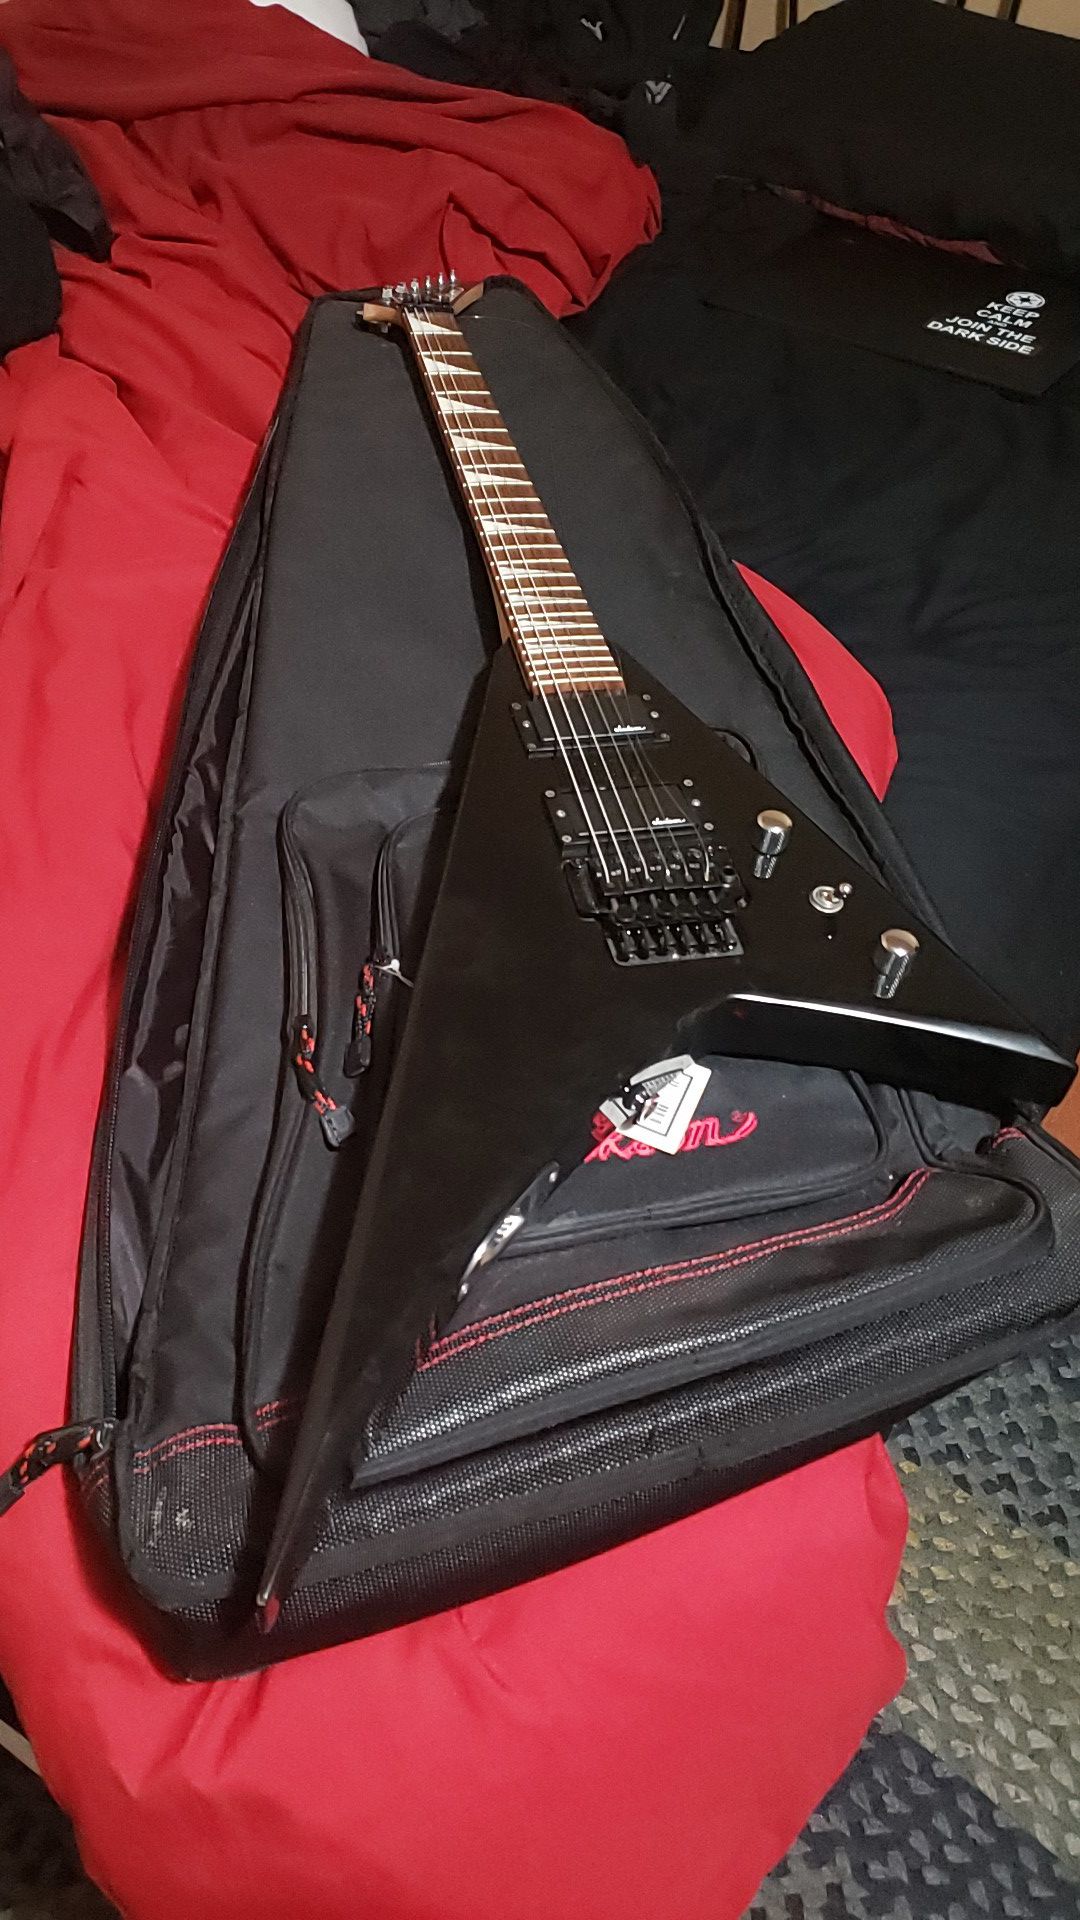 Jackson Rhoads Guitar and Gig bag